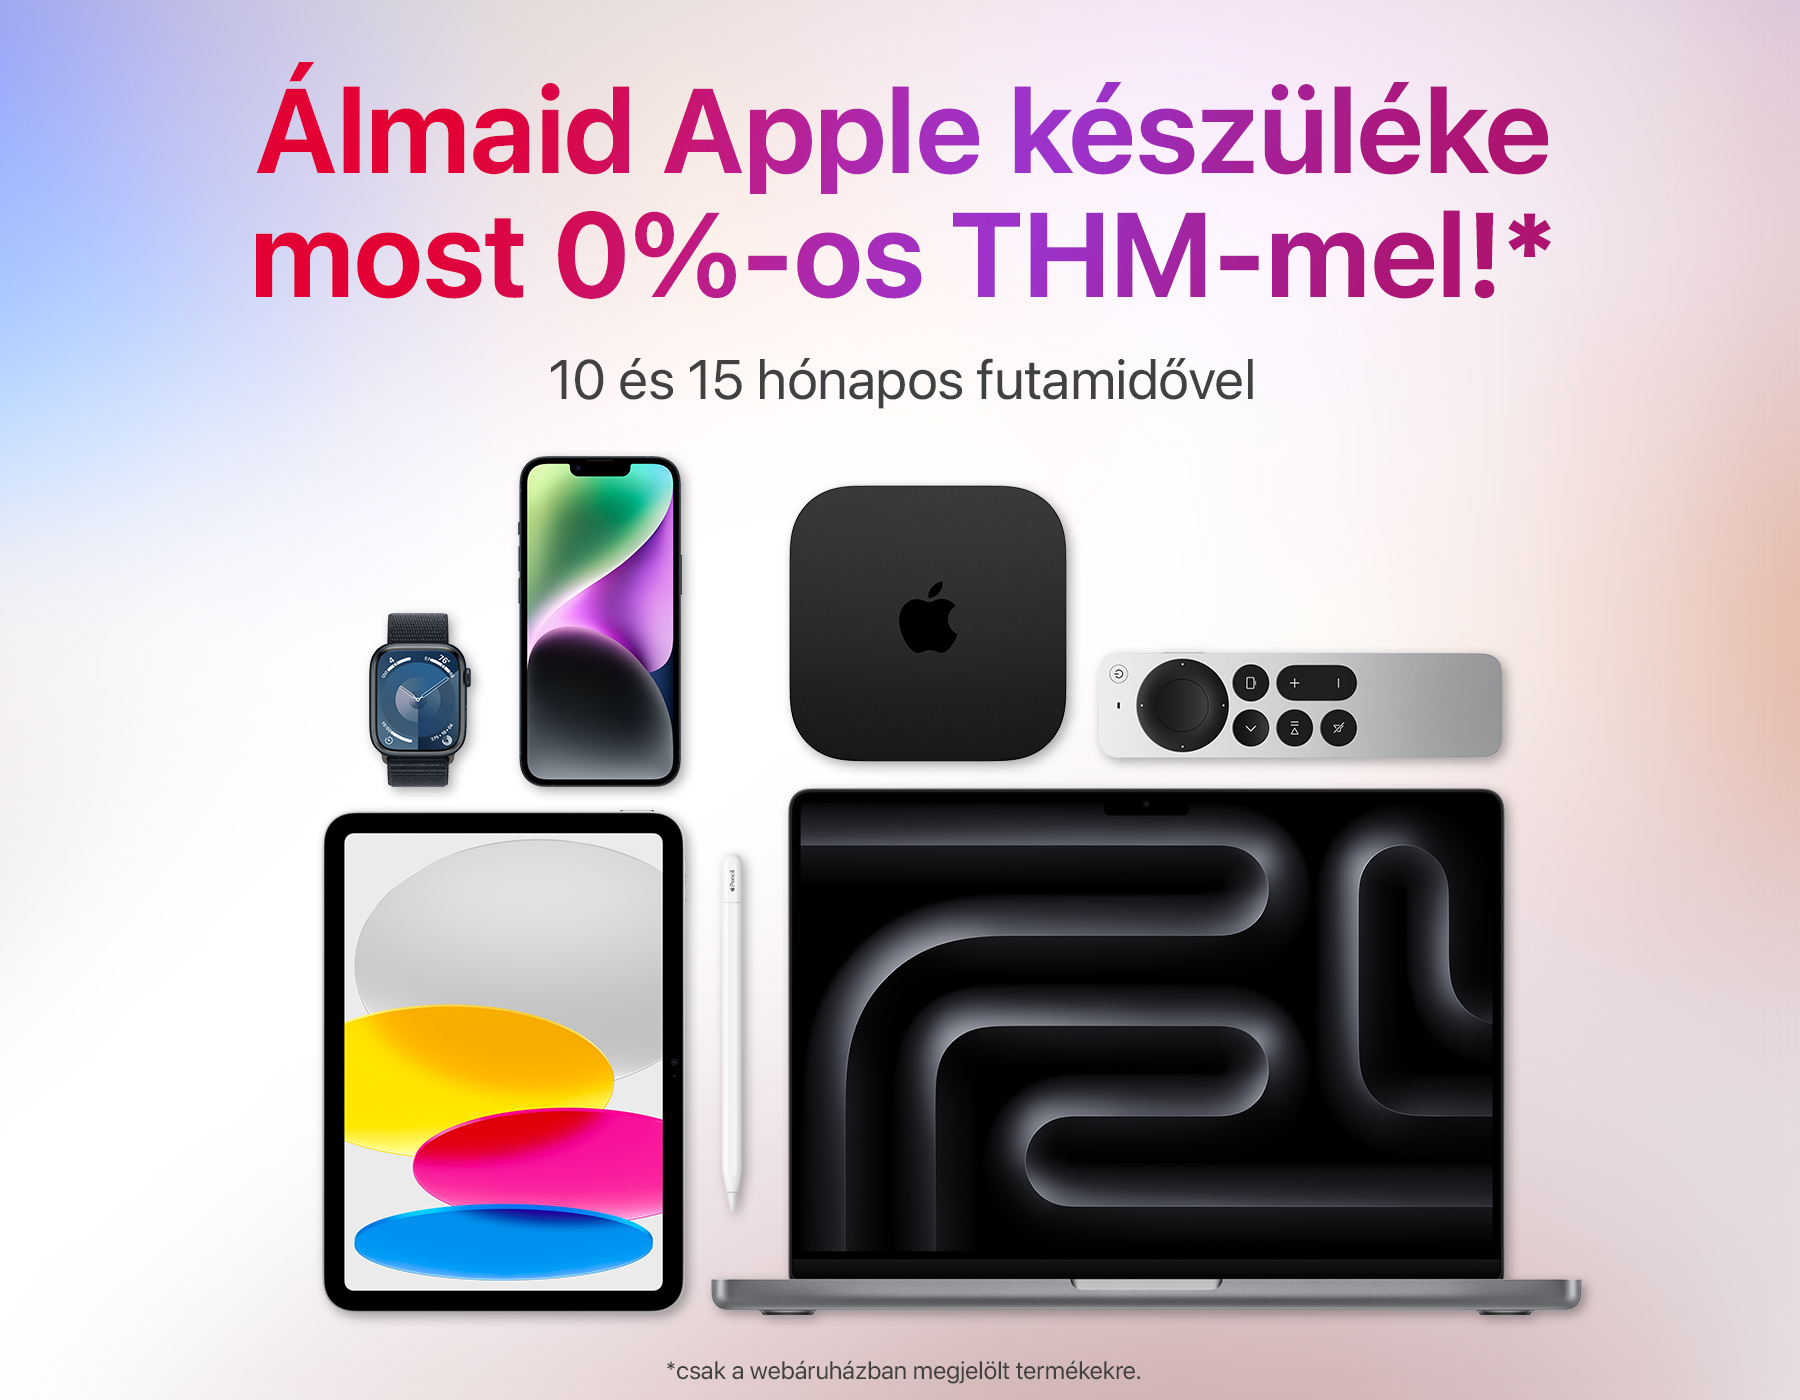 Álmaid Apple készüléke most 0%-os THM-mel!*